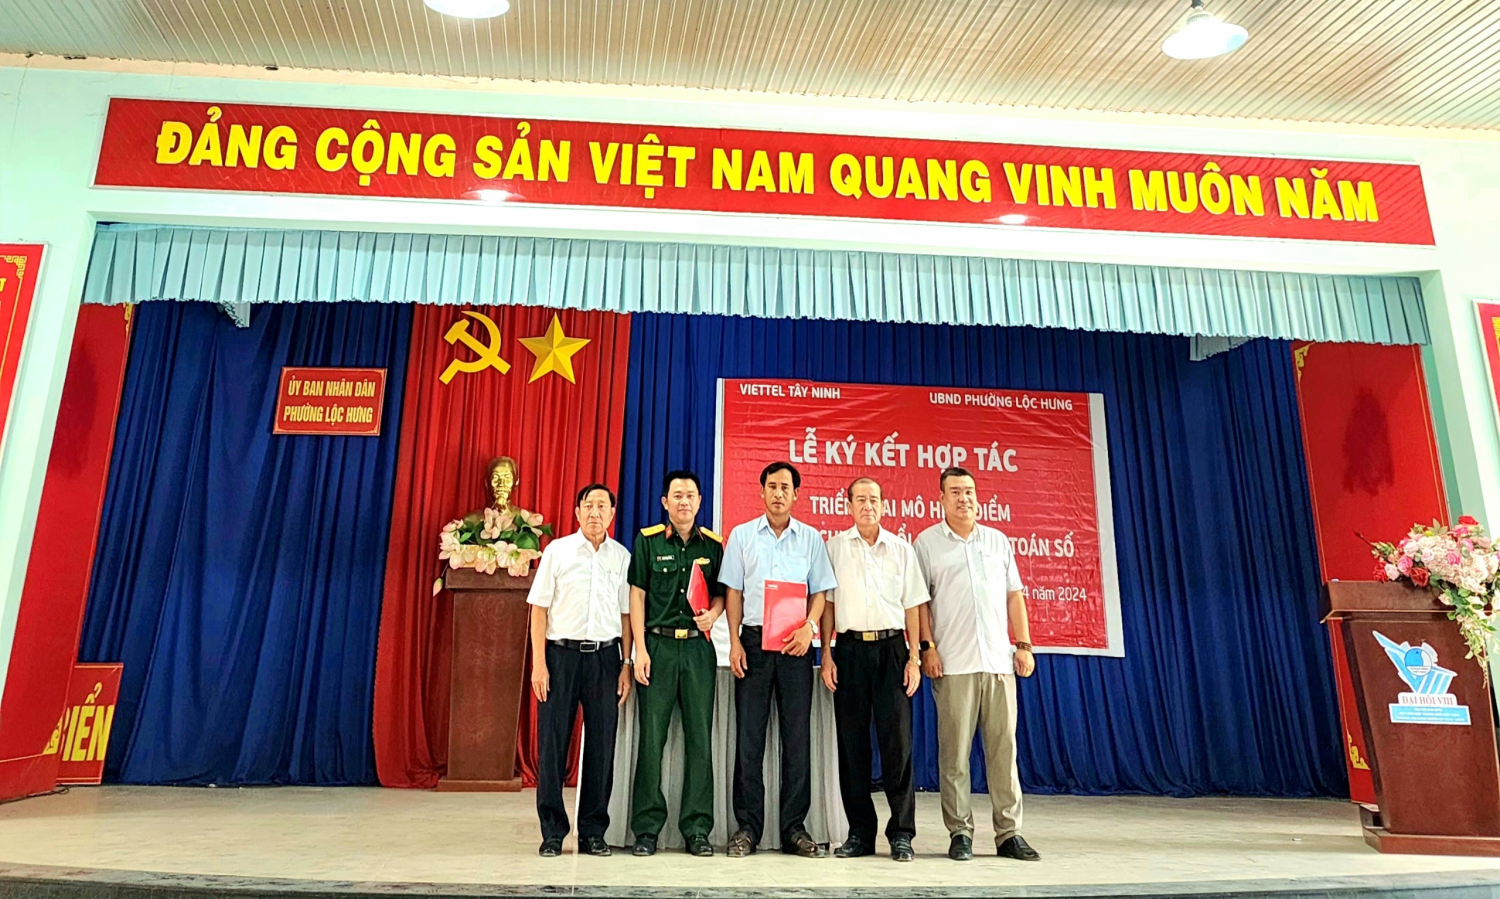 Quang cảnh buổi lễ ký kết